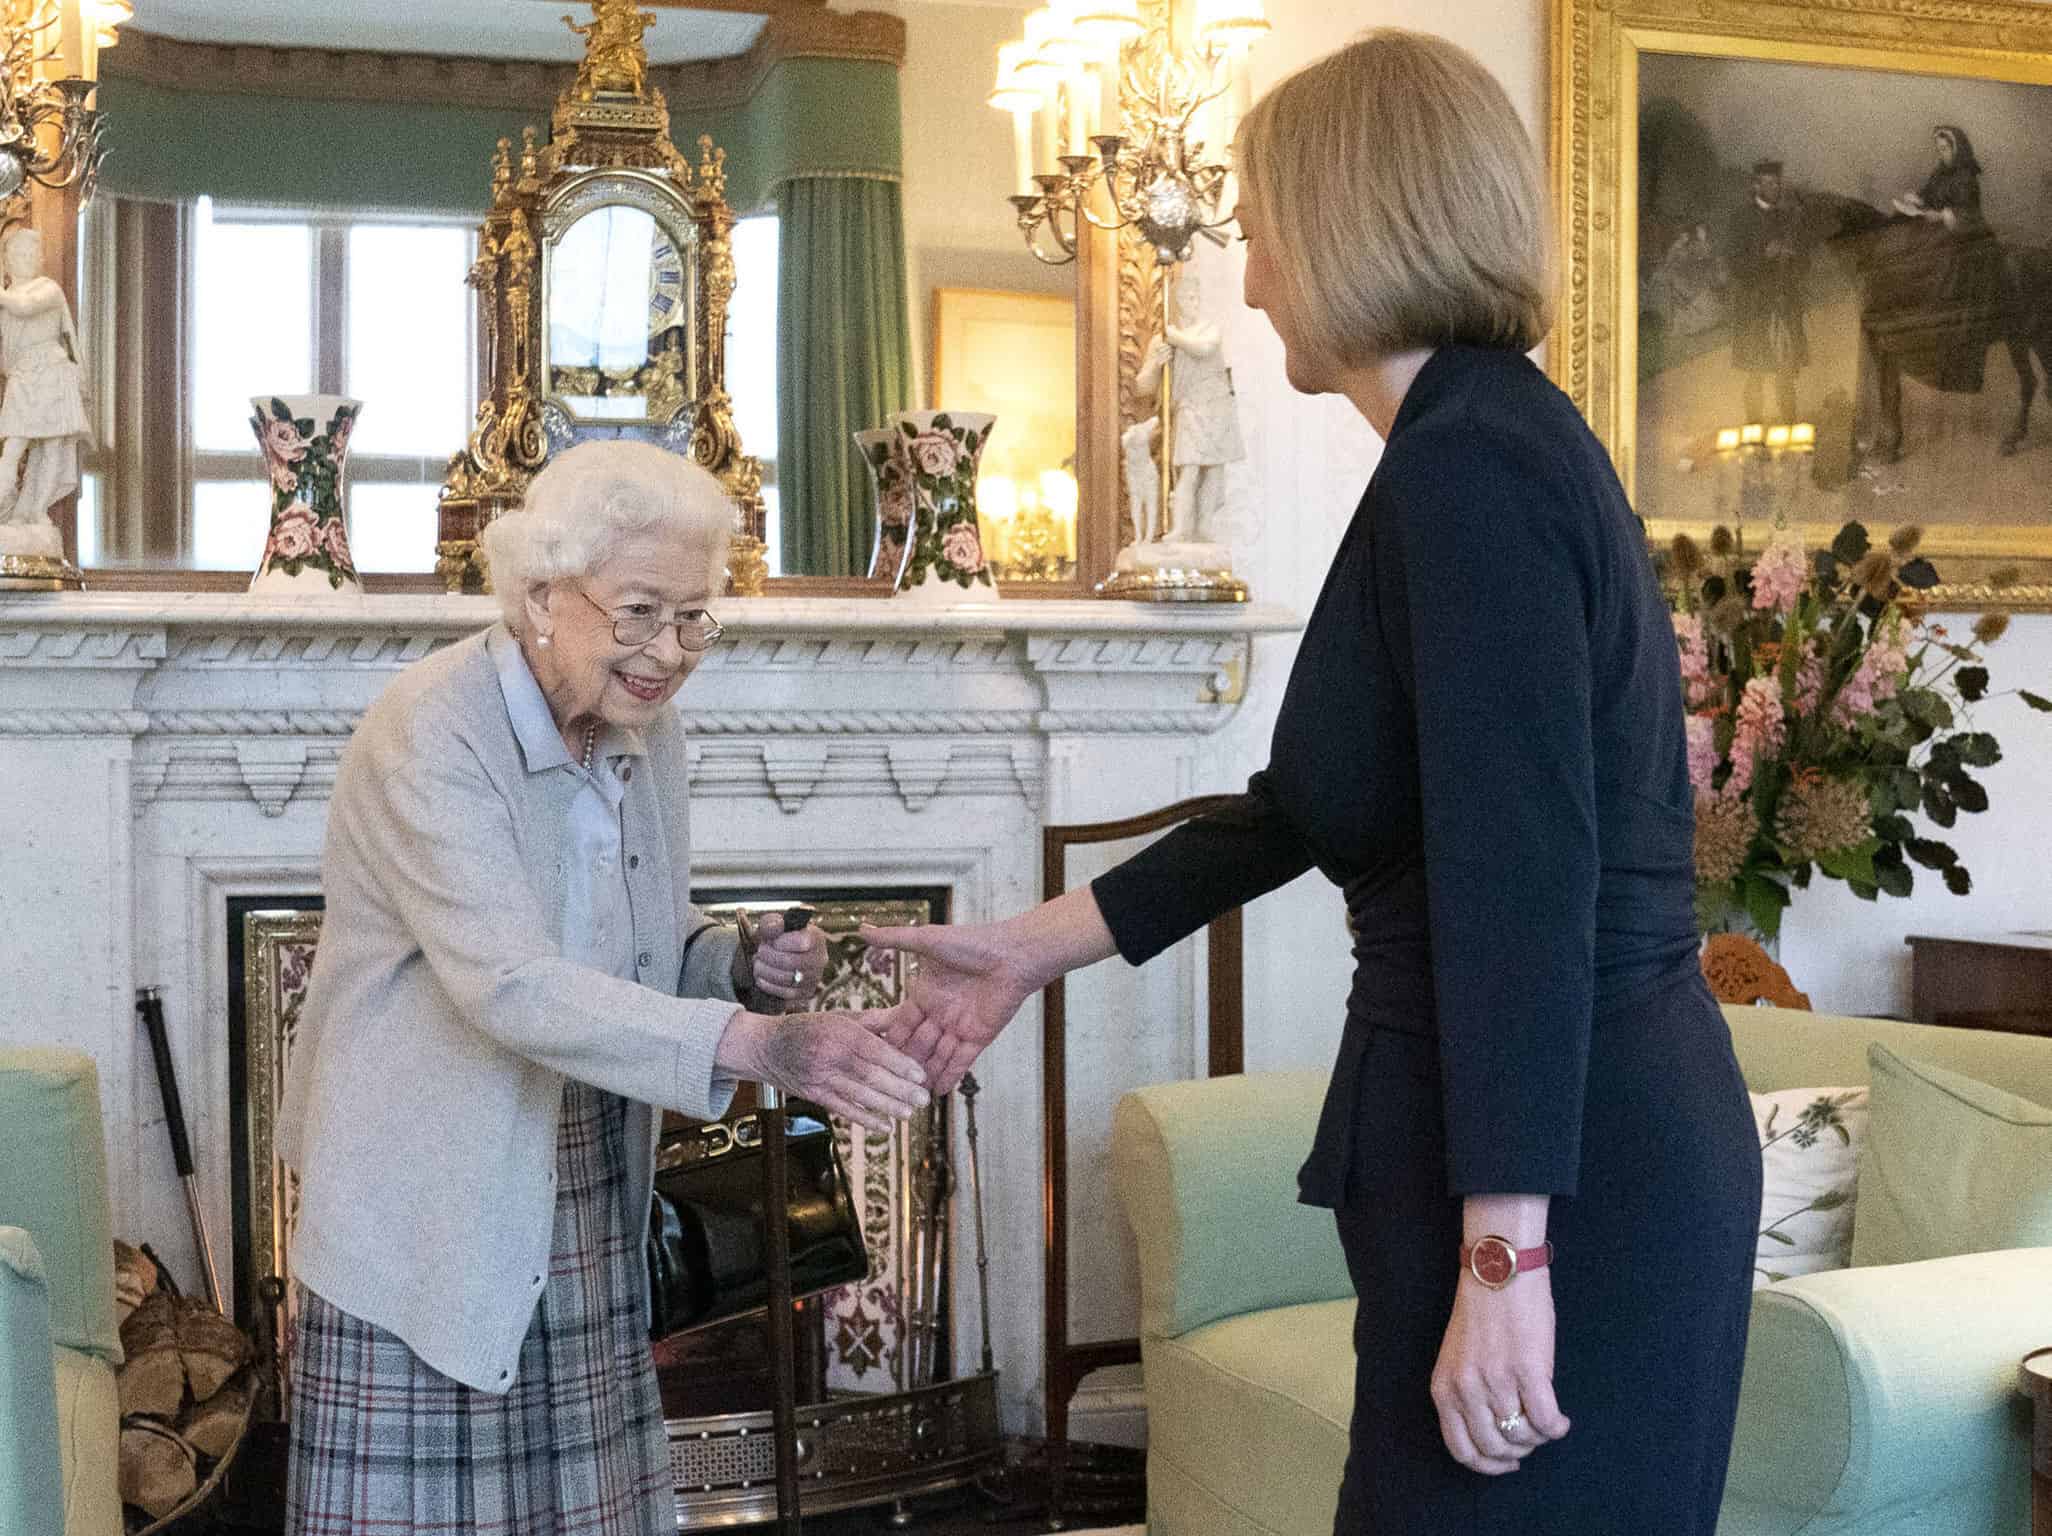 La reina Isabel II recibe a Liz Truss en la residencia del Balmoral, Escocia, donde la monarca le solicitó formar un nuevo gobierno como nueva líder del Partido Conservador, el 6 de septiembre de 2022.